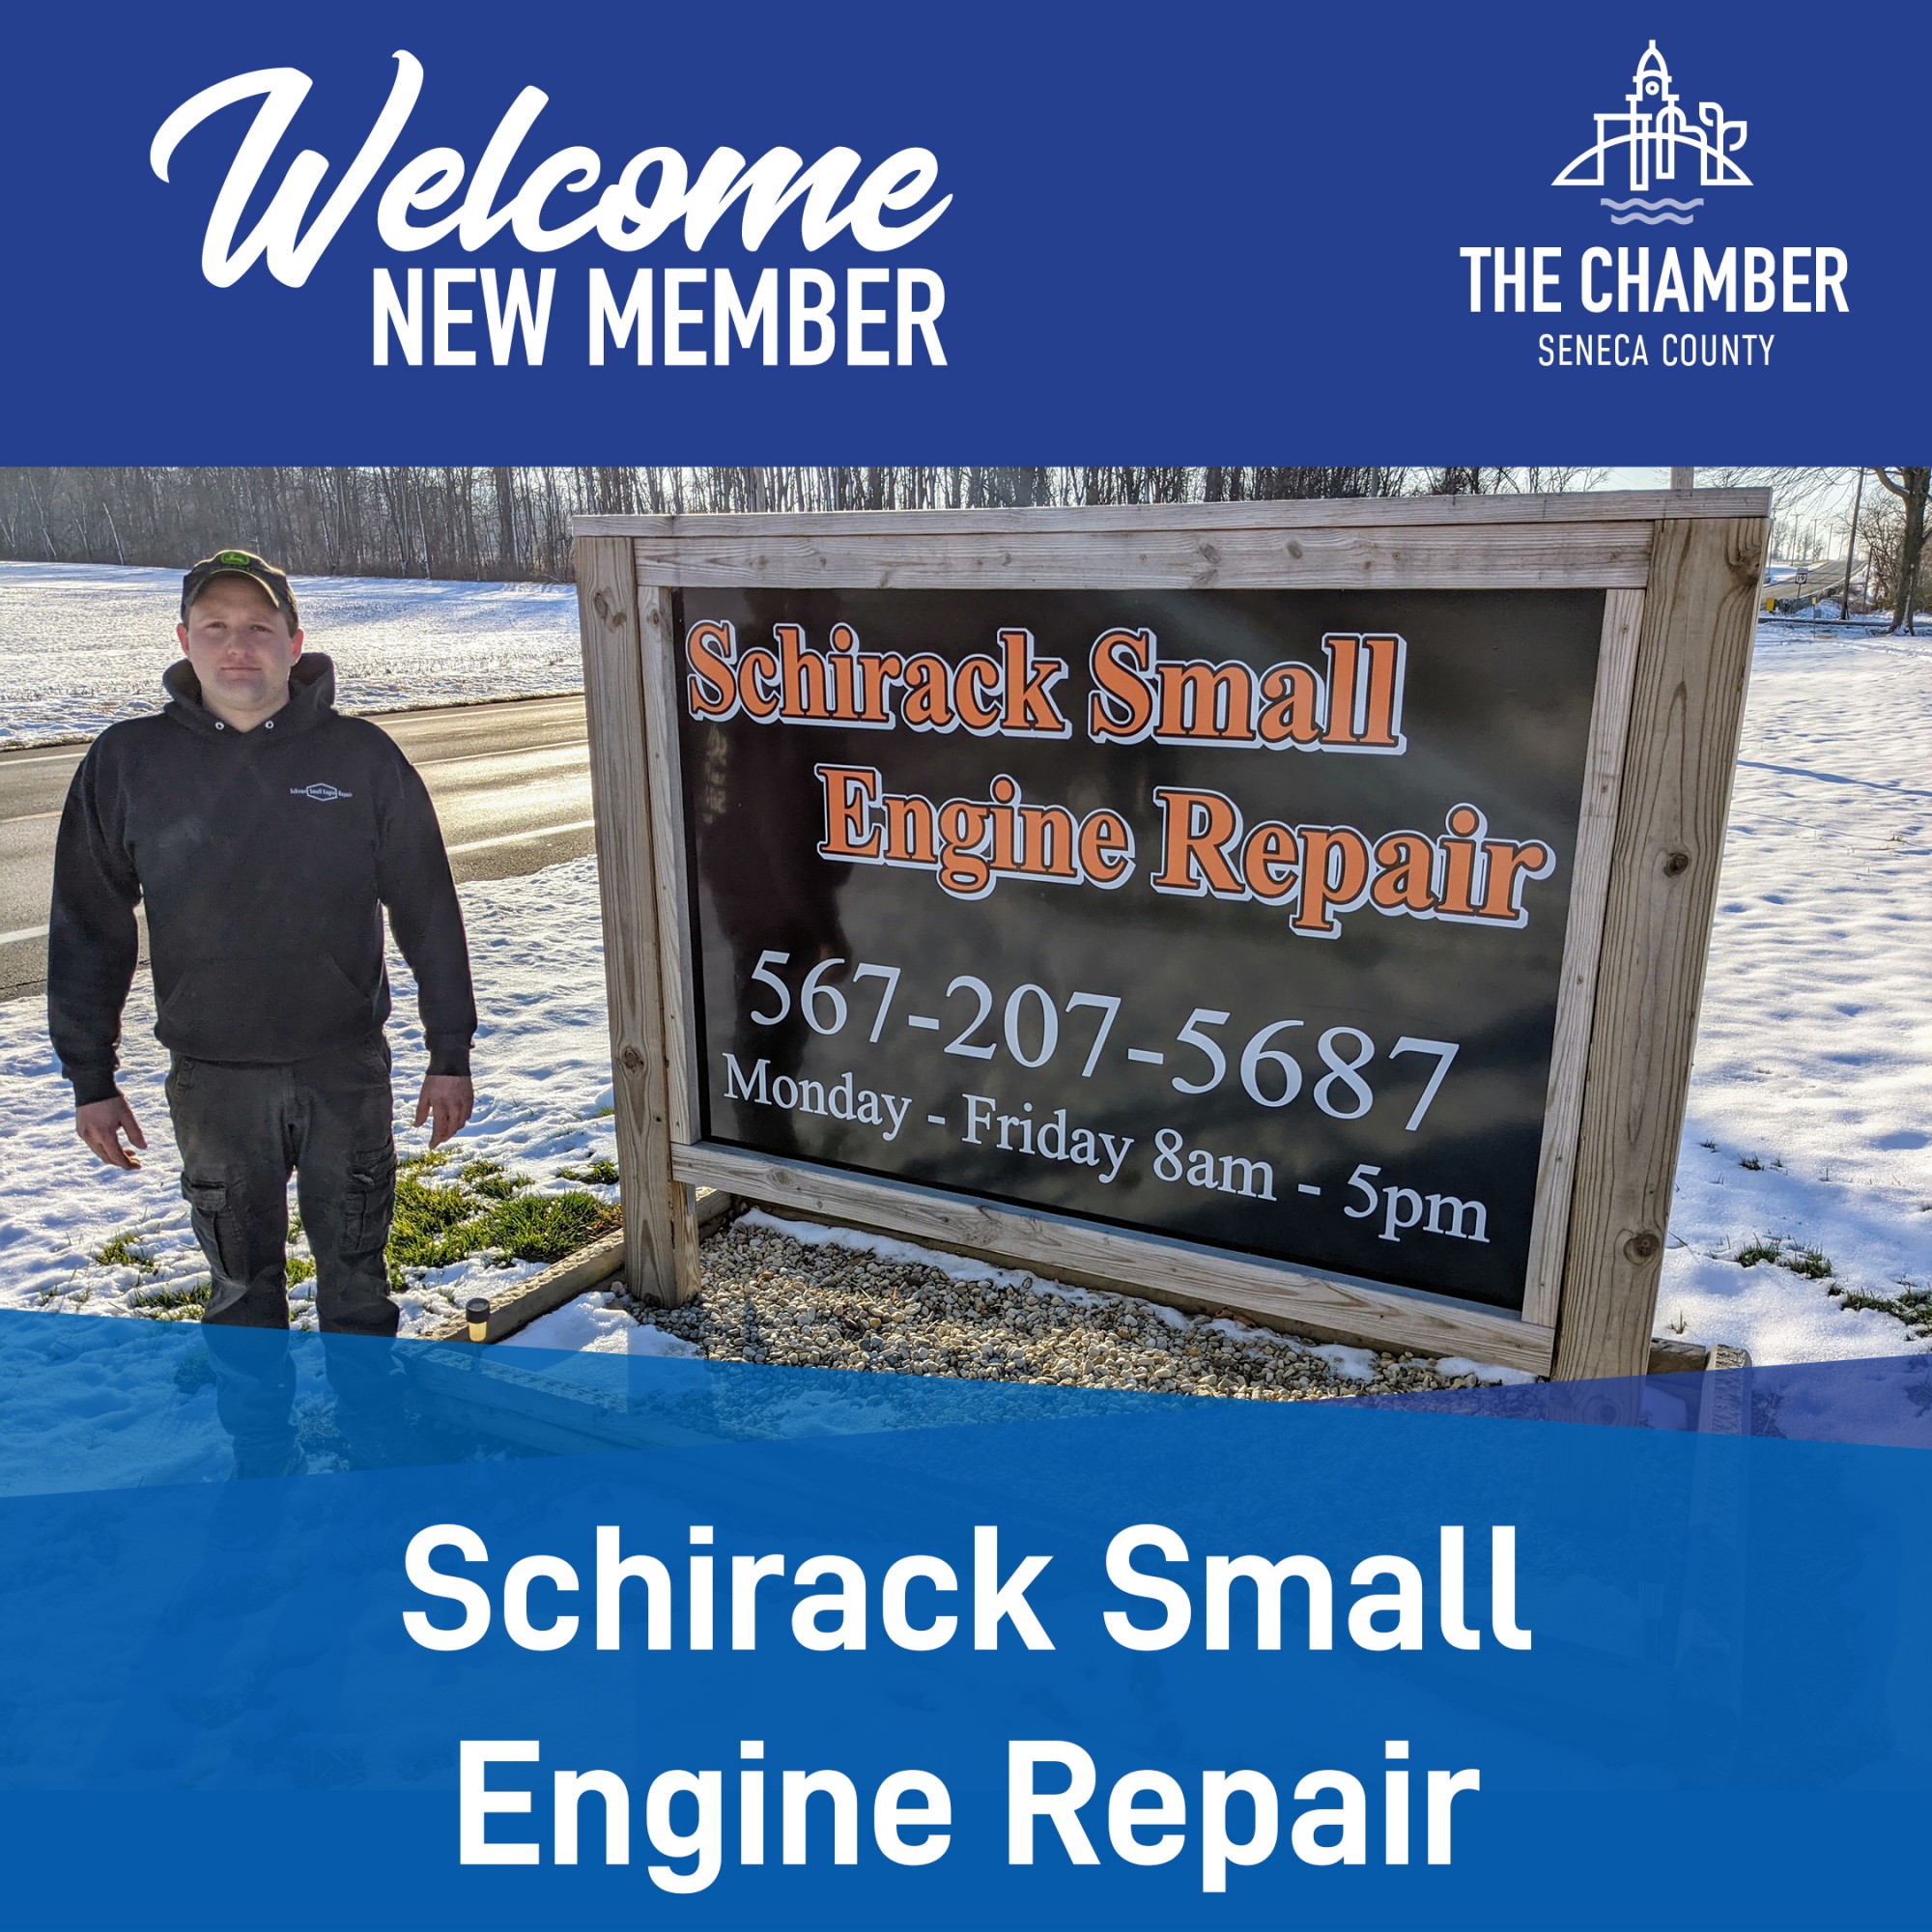 New Member:  Shirack Small Engine Repair